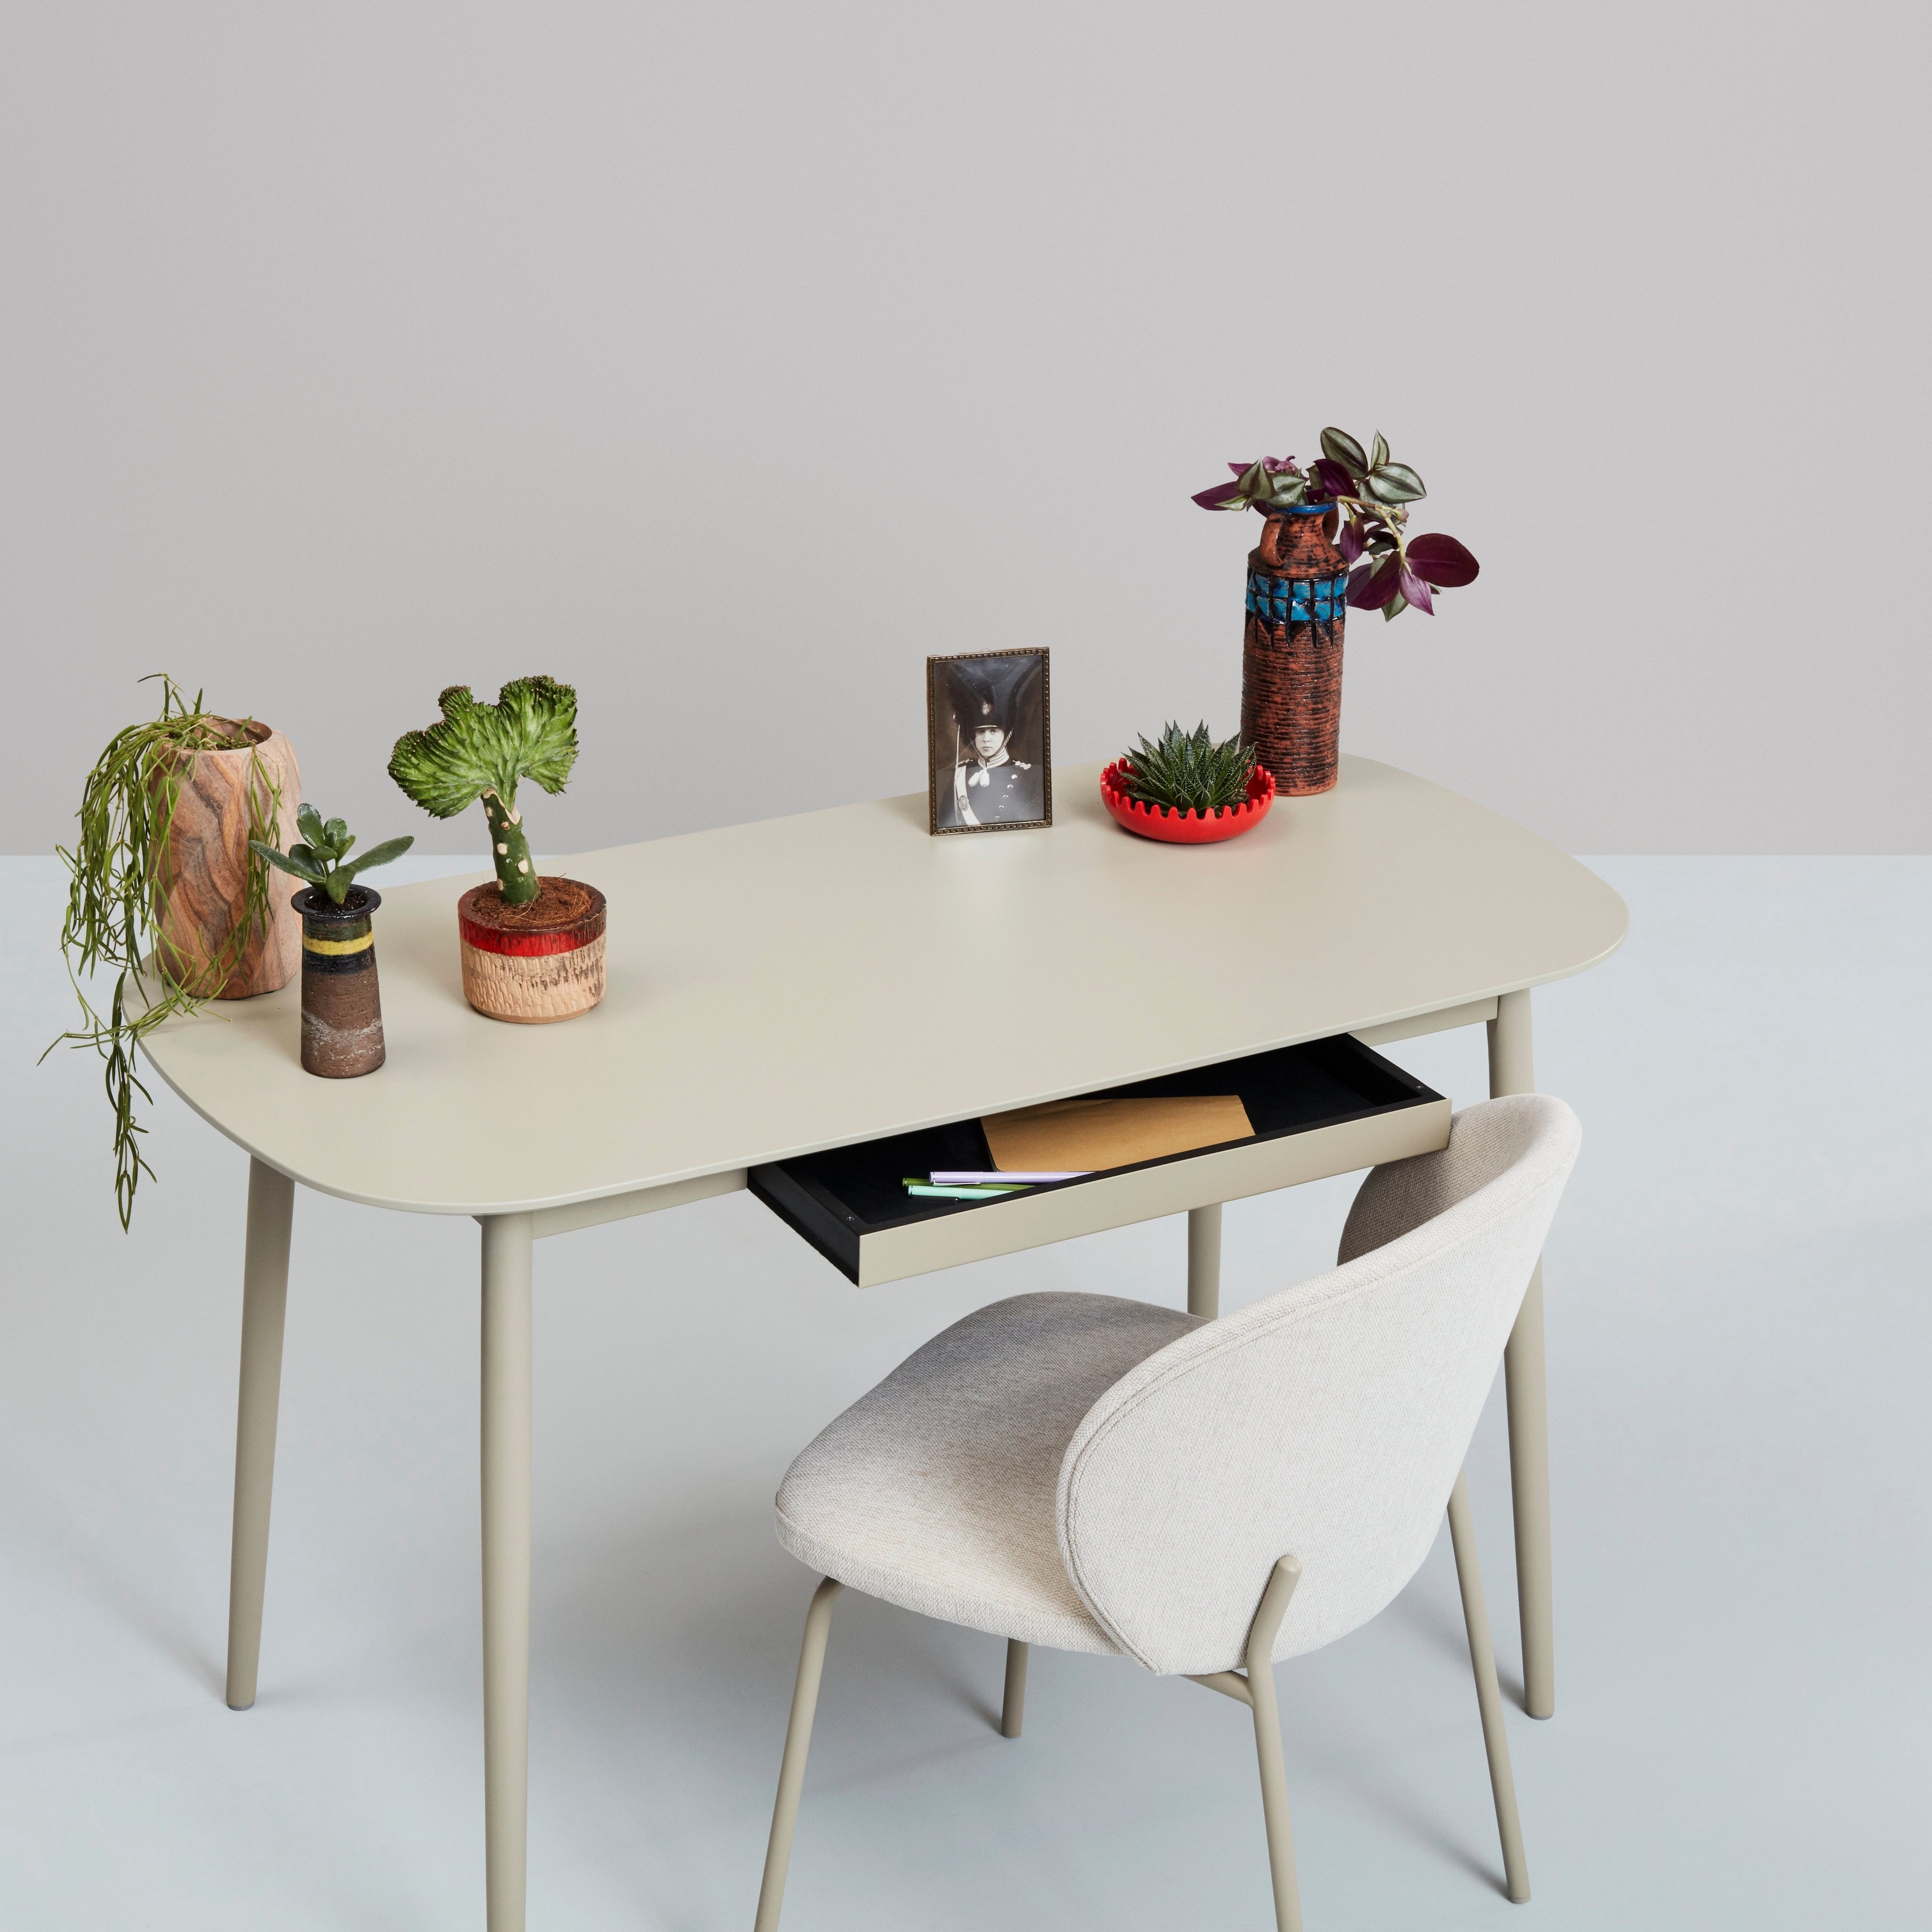 Bureau blanc avec plantes, objets décoratifs et une chaise sur un fond neutre.